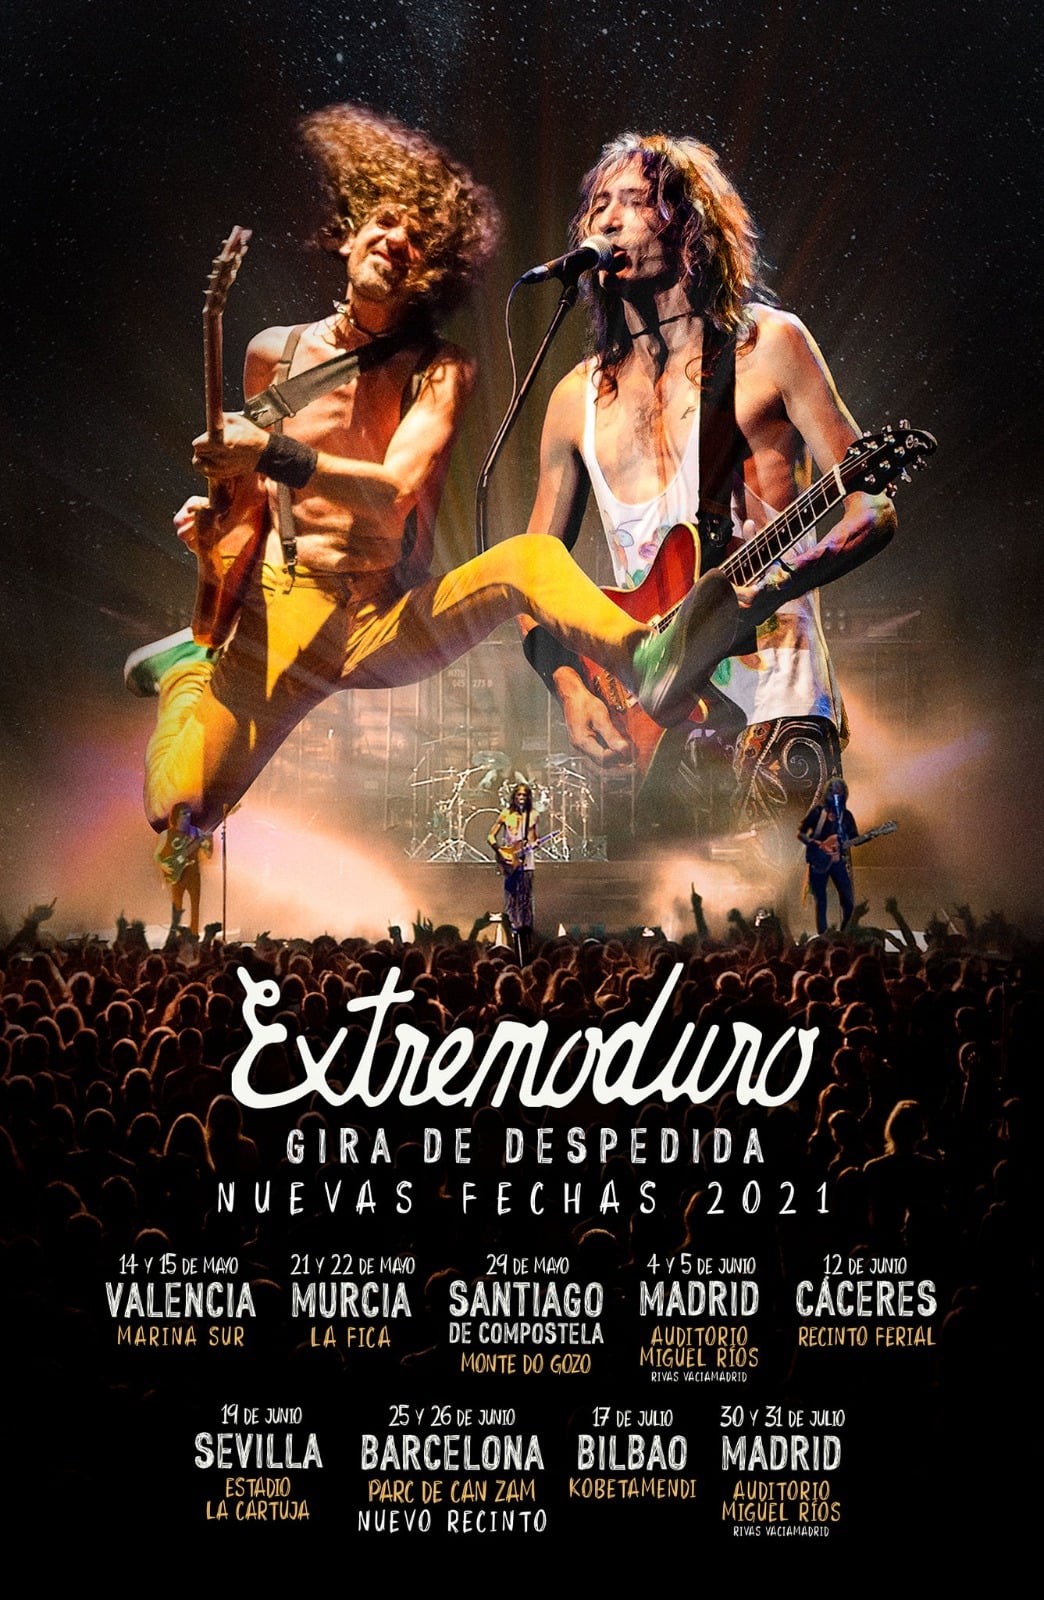 Extremoduro anuncia las fechas de su gira de despedida en 2021 2